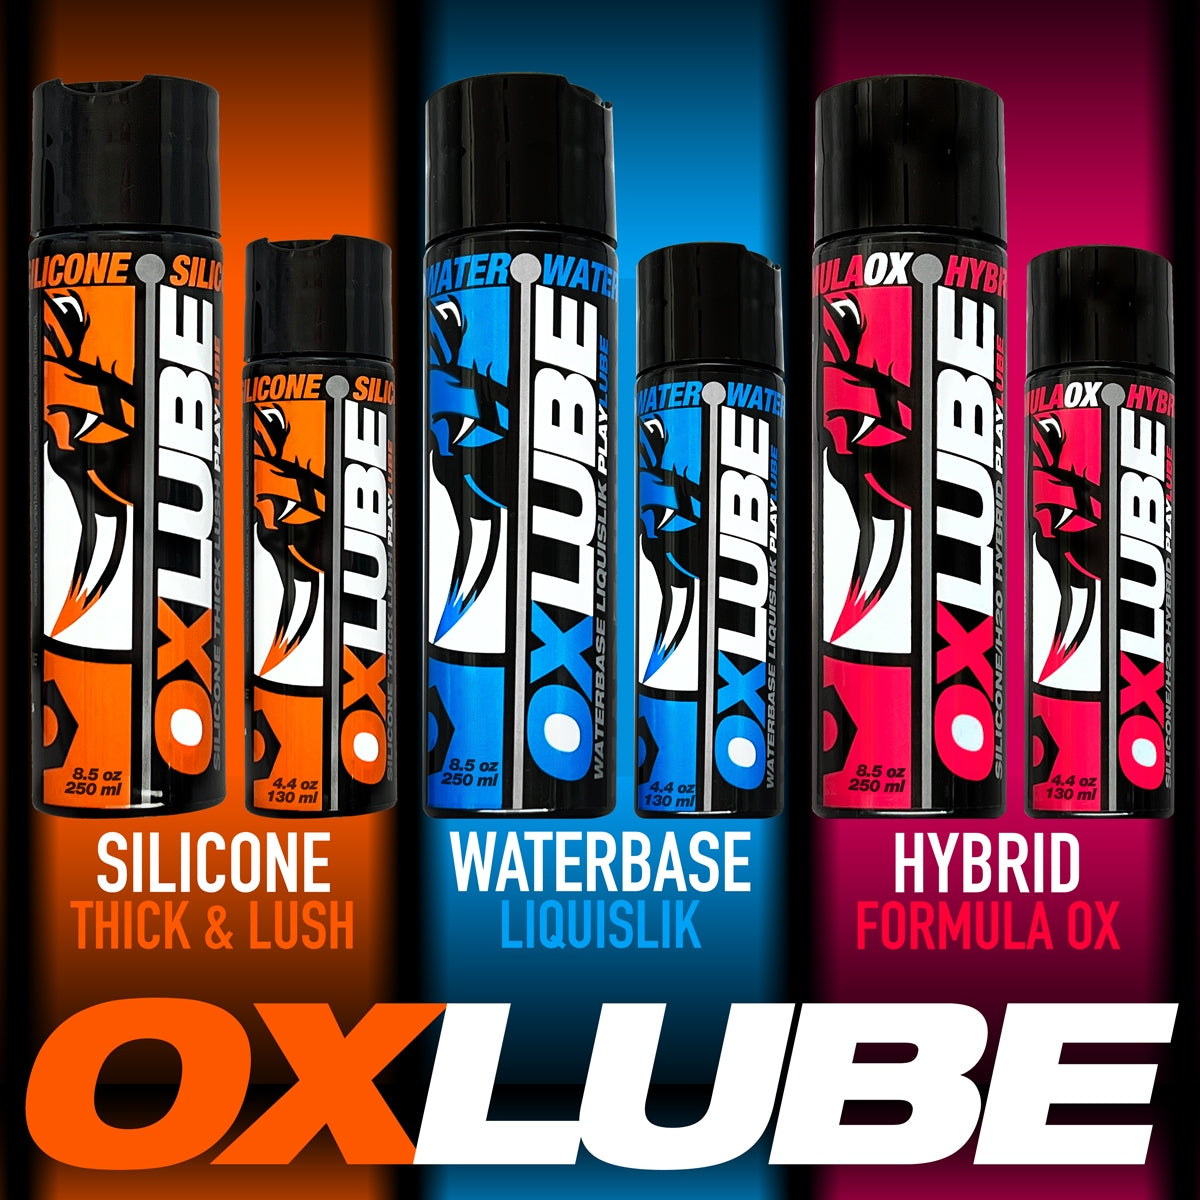 Oxballs Oxlube Liquislix Water Based Lubricant (8217879609583)